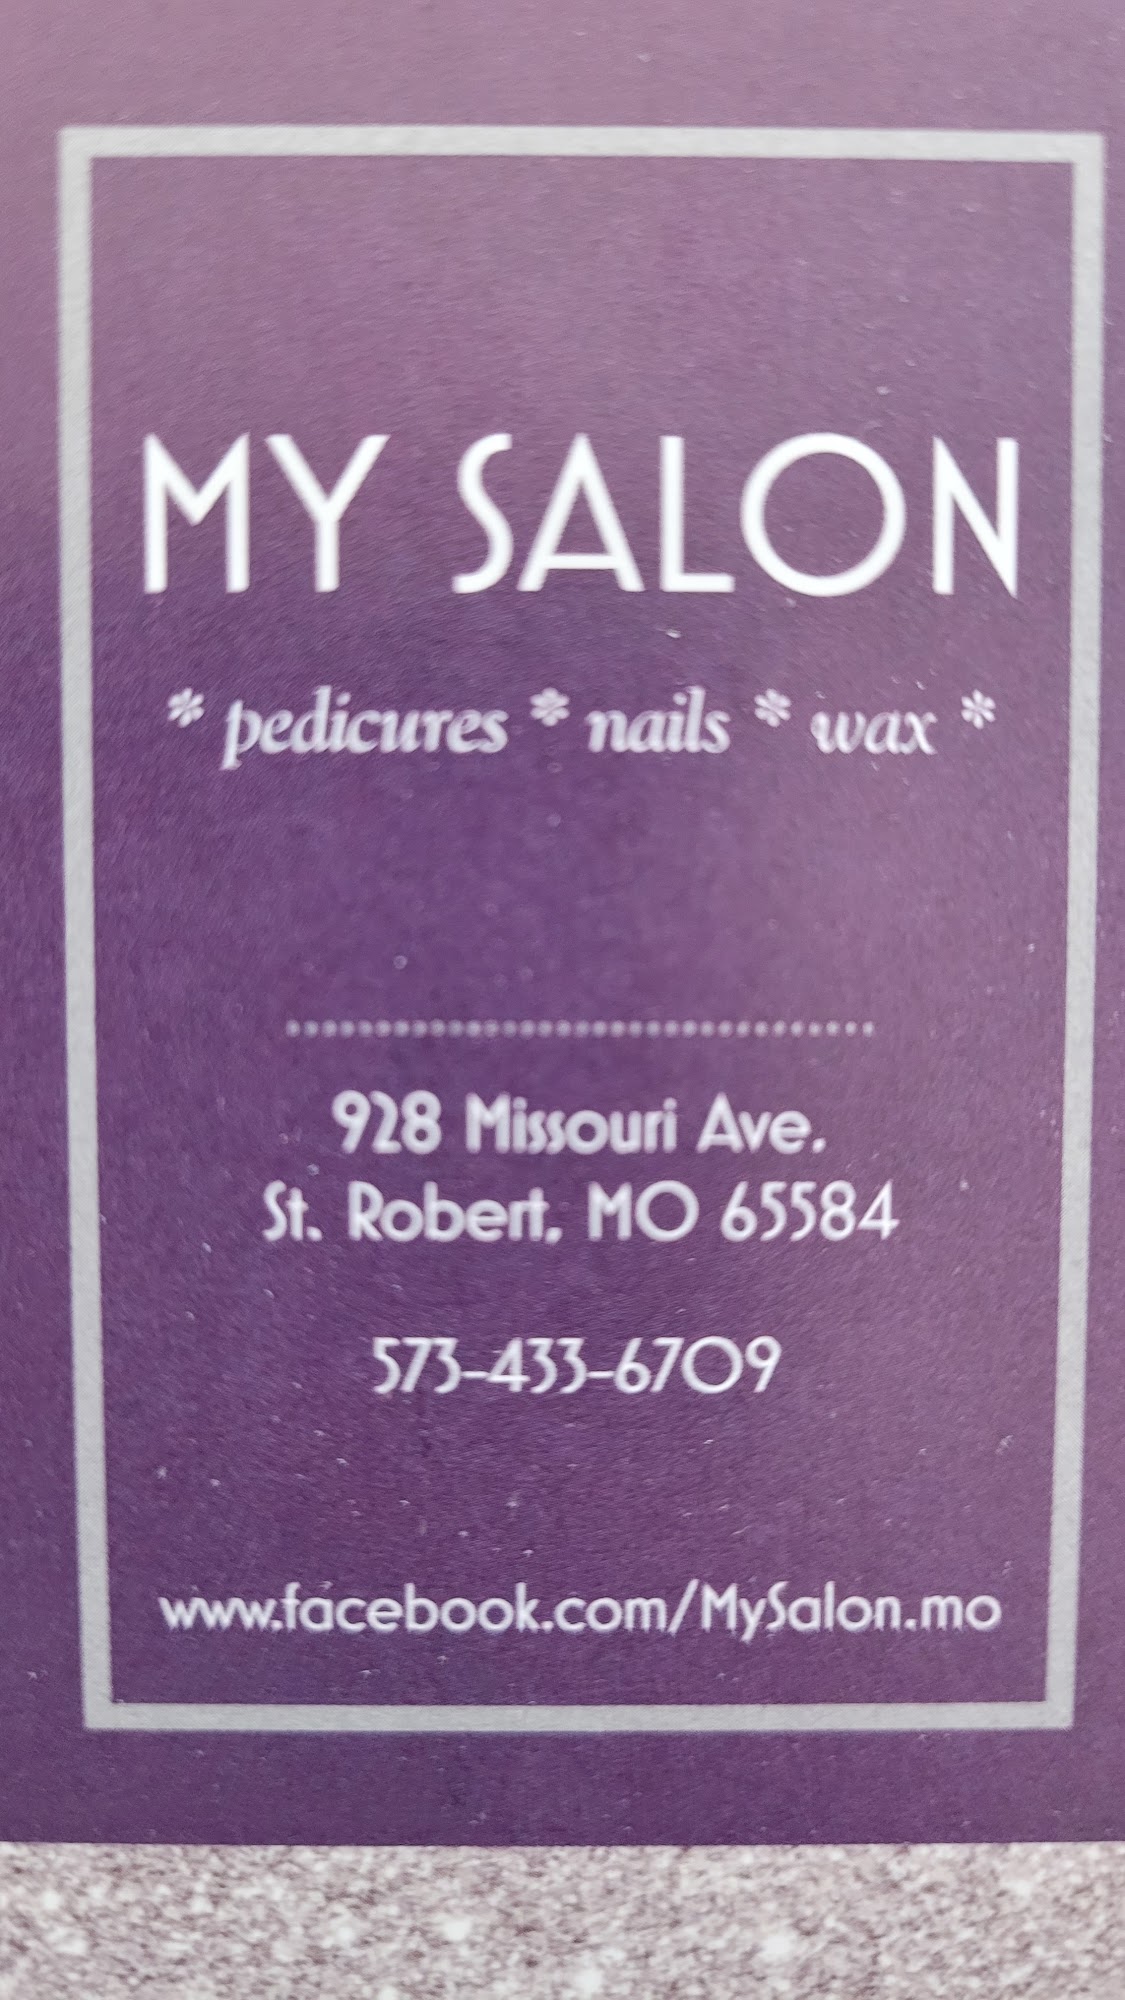 My Salon 928 Missouri Ave #4638, St Robert Missouri 65584